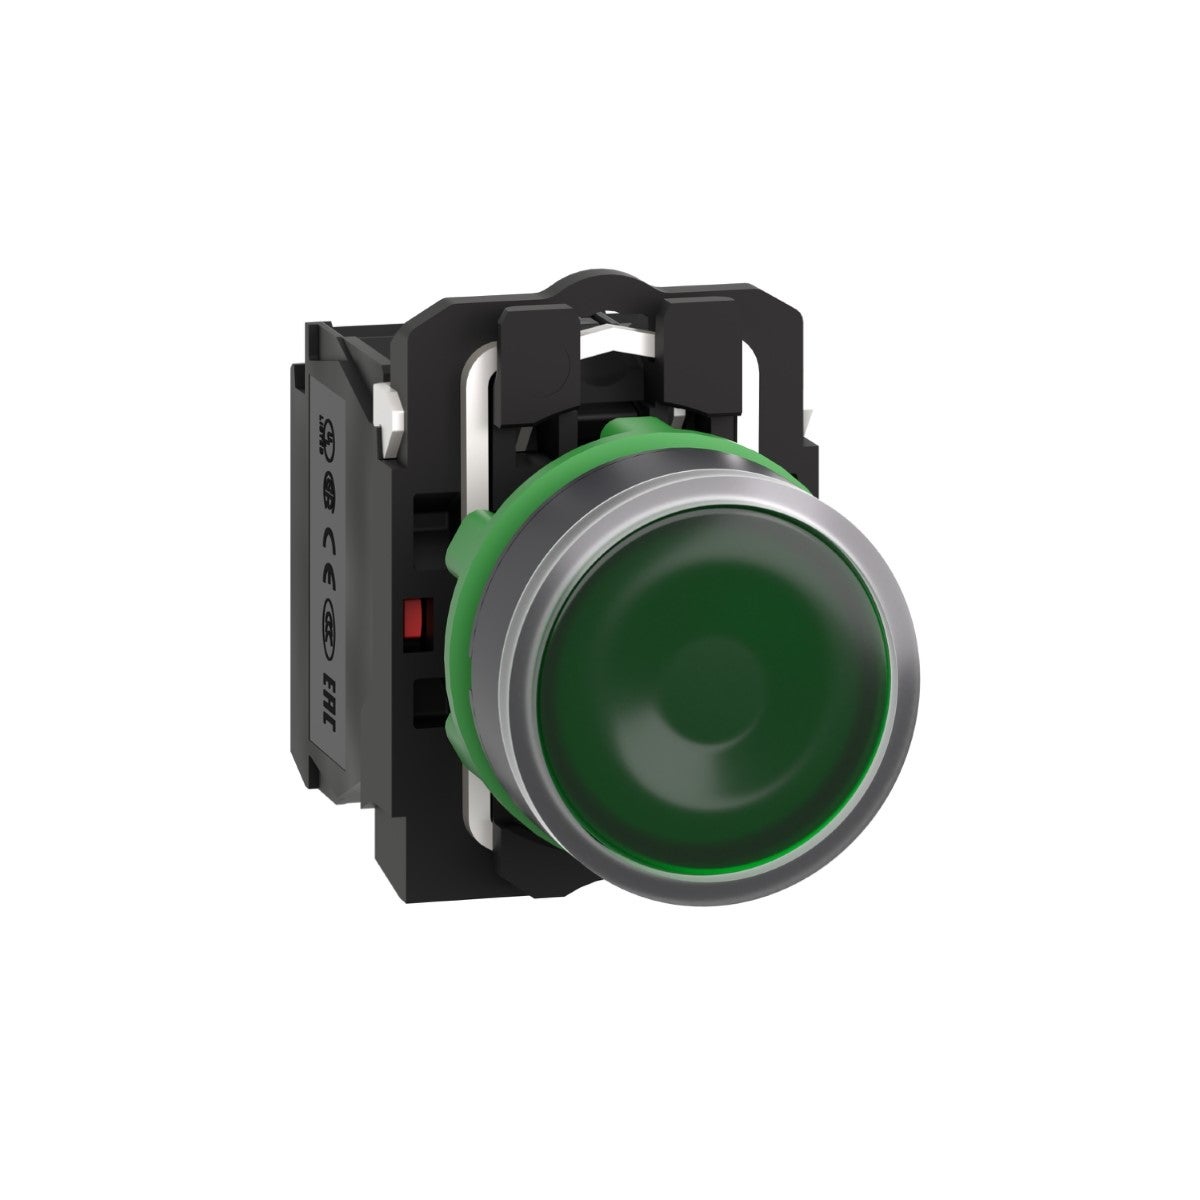 Illuminated push button, Harmony XB5, plastic, flush, green, 22mm, universal LED, plain lens, 1NO + 1NC, 110...120V AC